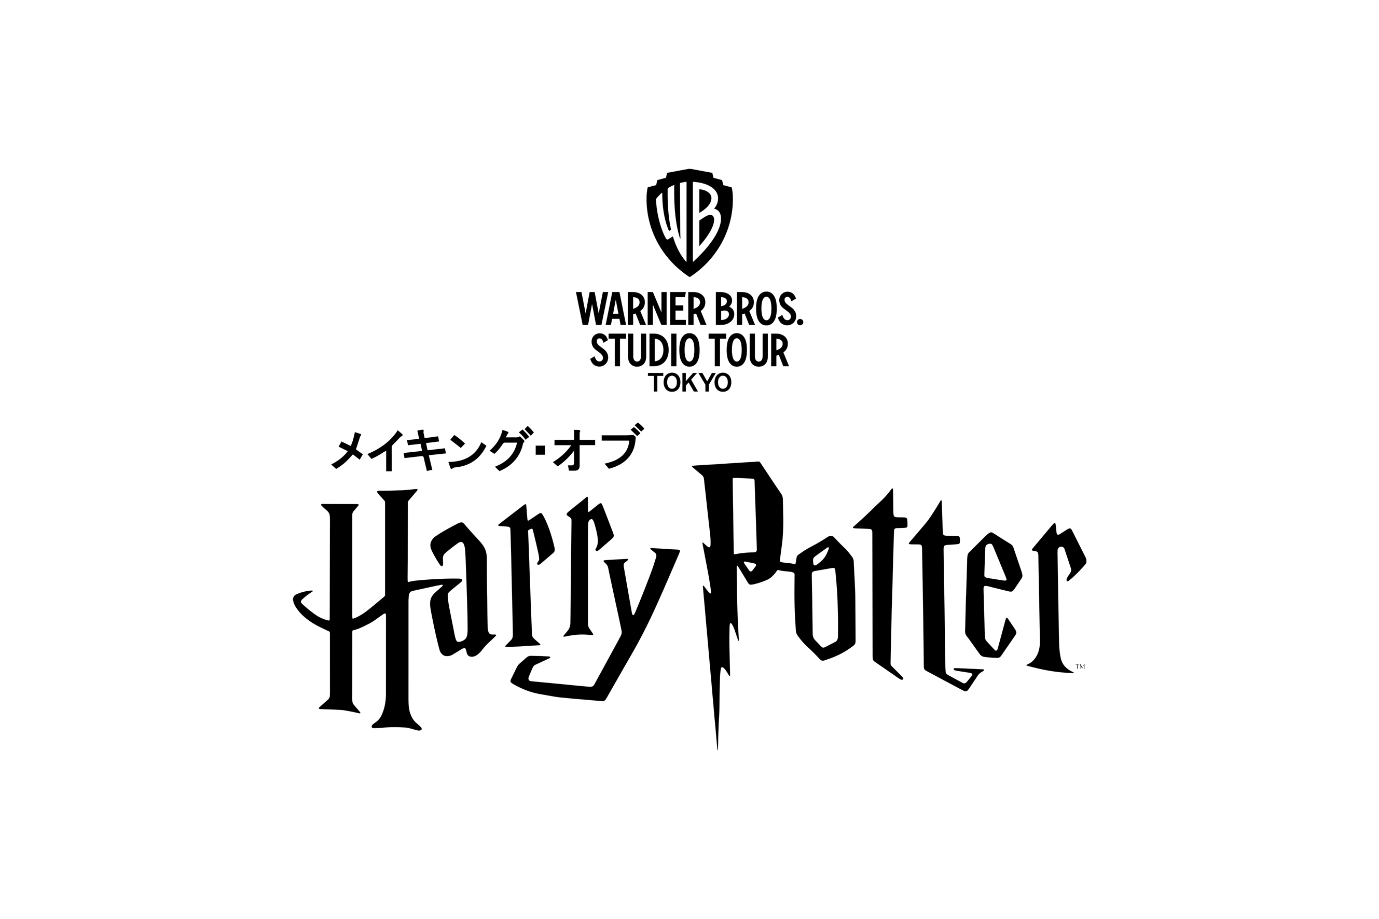 ハリー ポッター スタジオツアー東京 としまえん跡地にオープン決定 ワーナー ブラザース ジャパン合同会社のプレスリリース